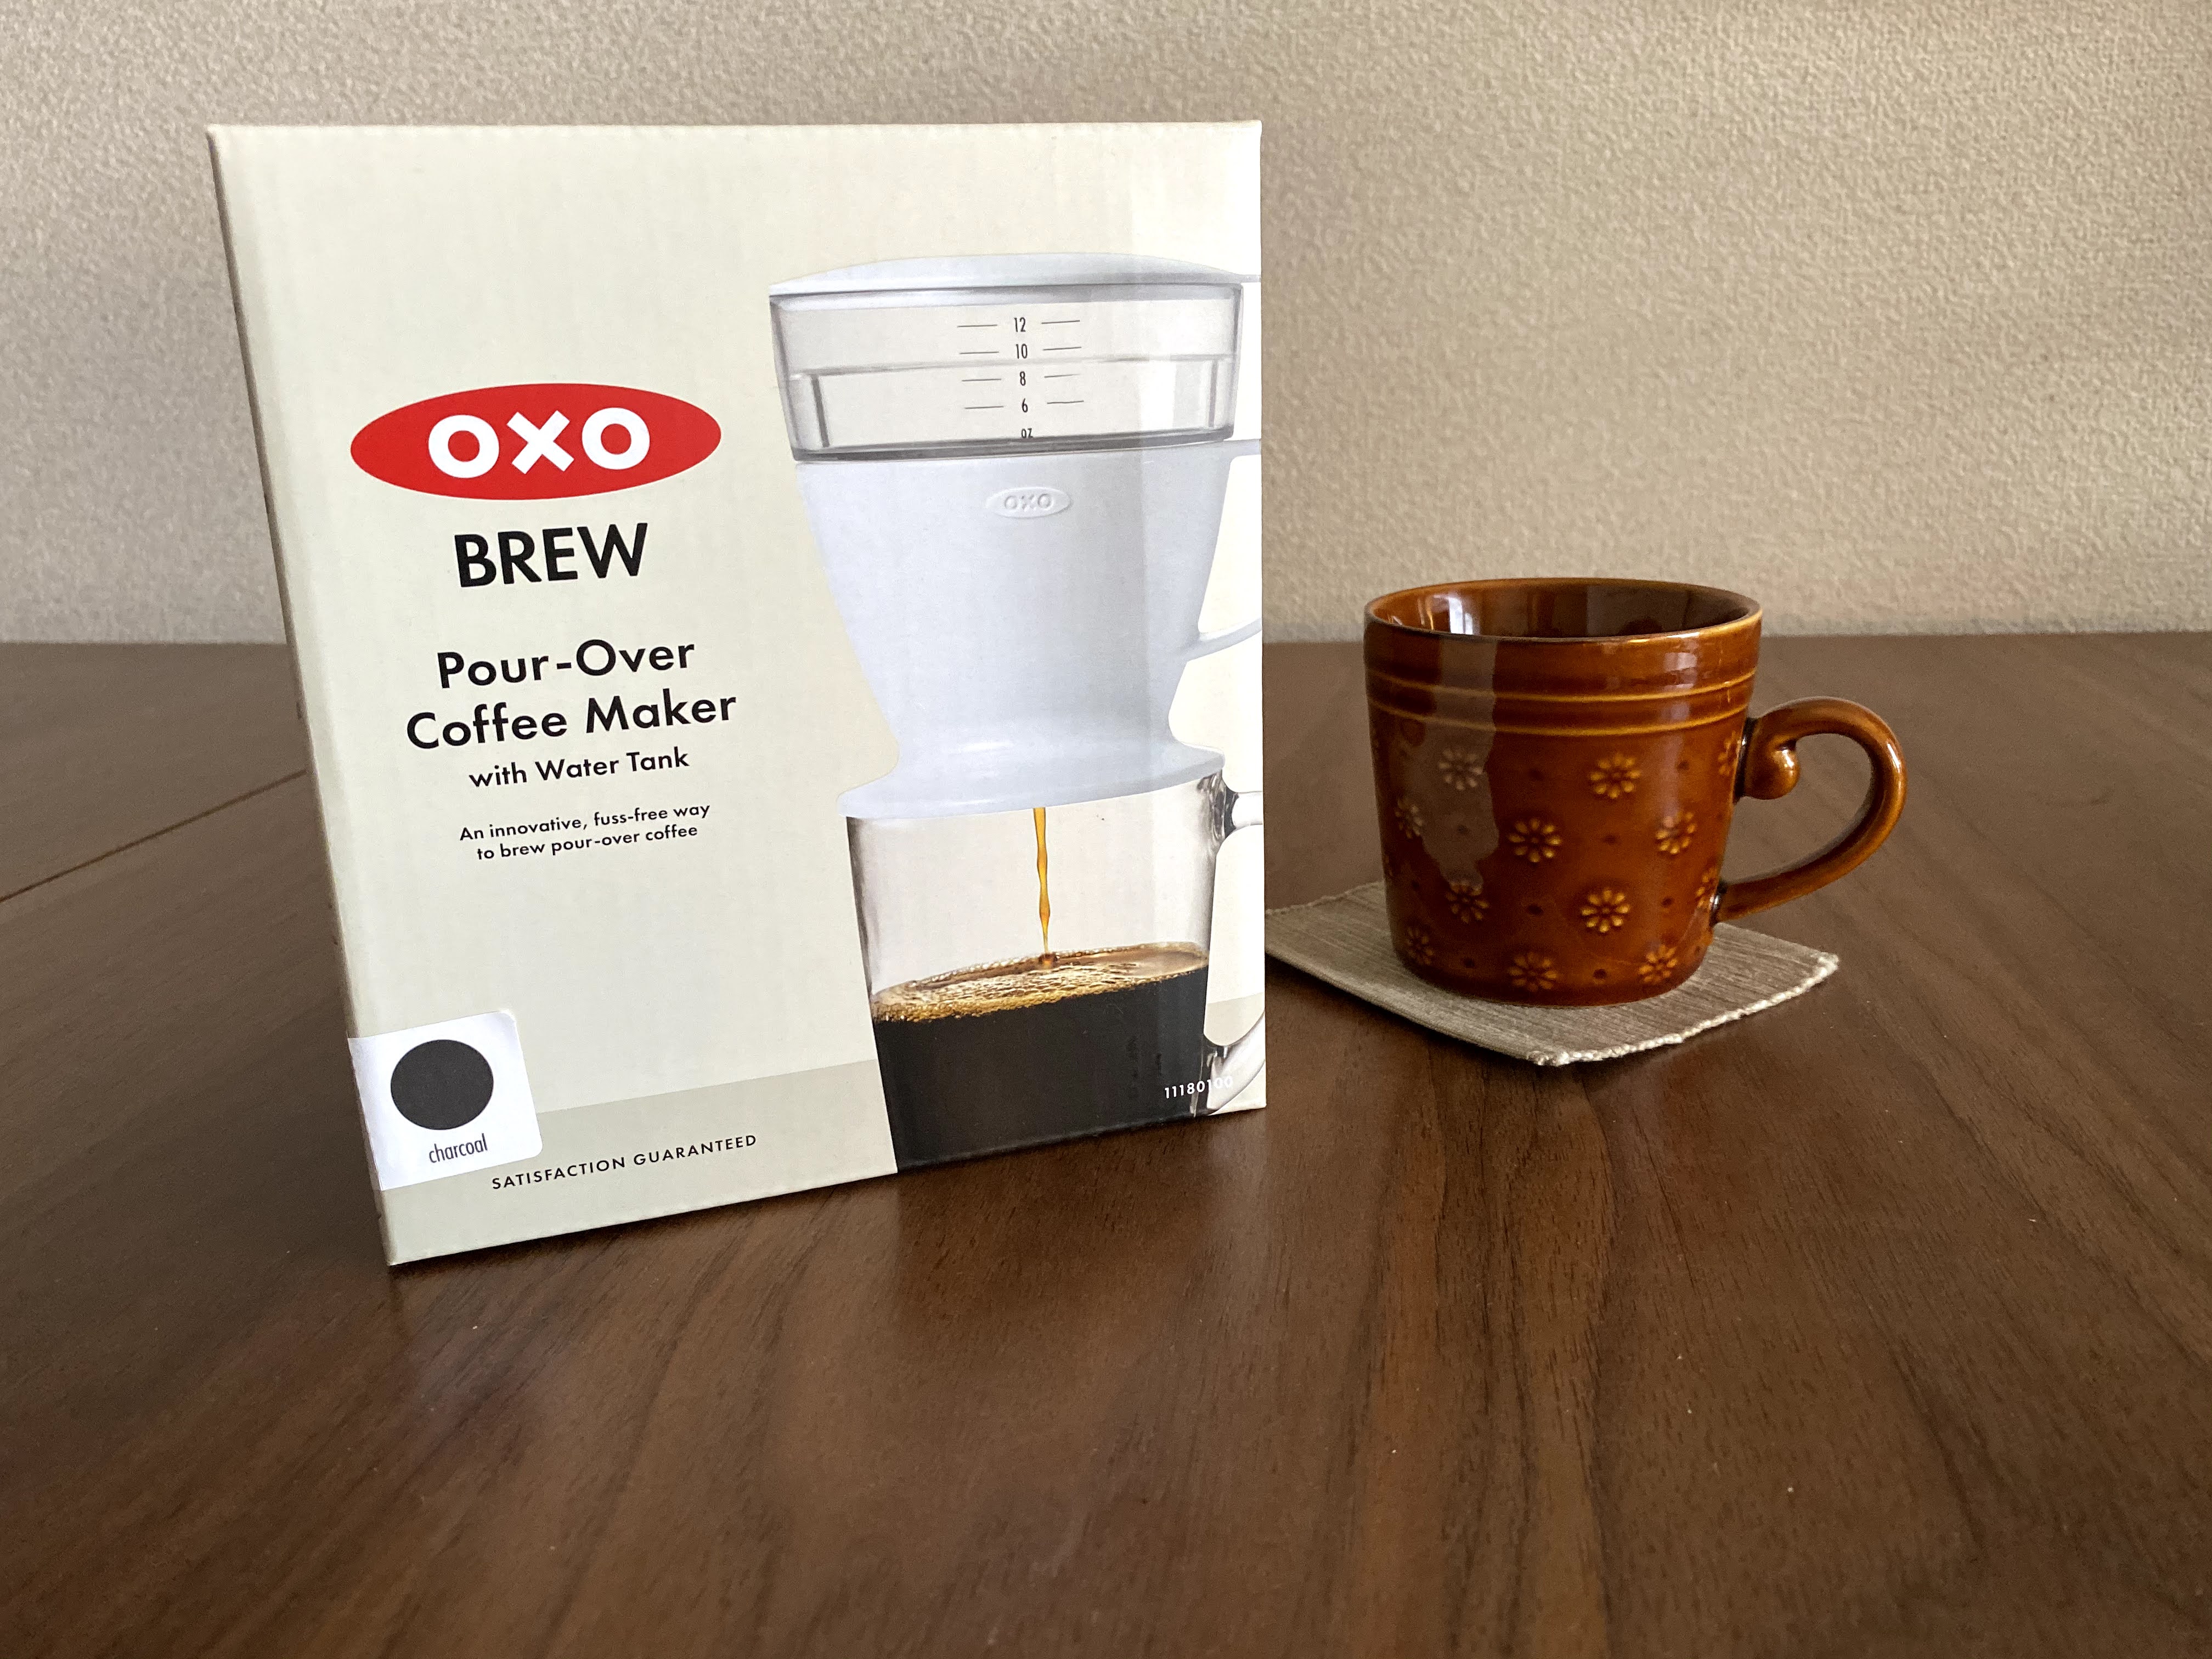 OXOオートドリップ コーヒーメーカーを使ってみて率直な感想 ...